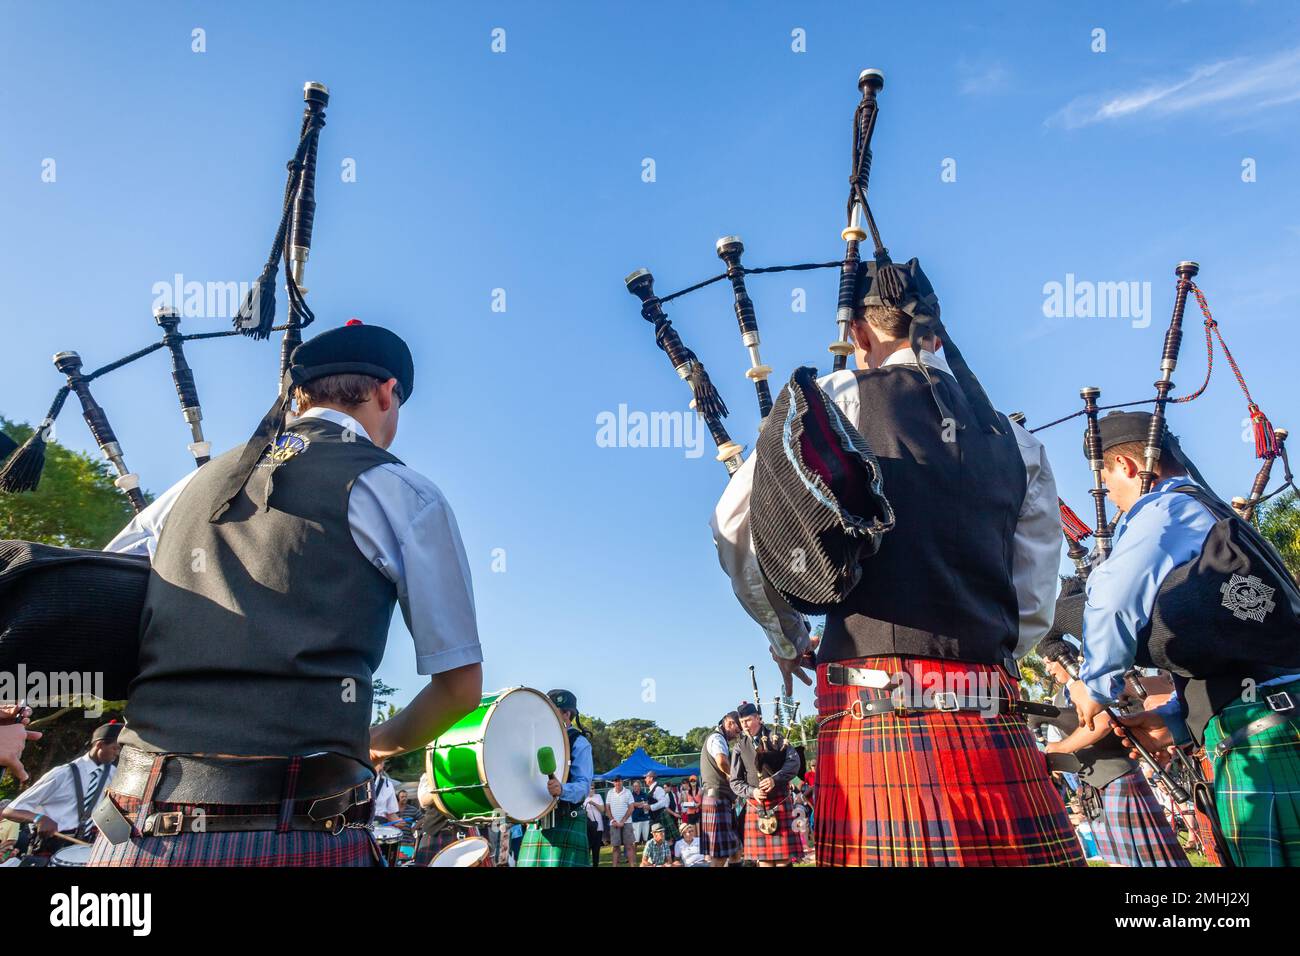 Schottische Band-Musiker Dudelsack-Aufführung bei Highland-Spielen ein Rückblick-Fotograf Outdoor-Veranstaltungsort Sommertag am blauen Himmel. Stockfoto